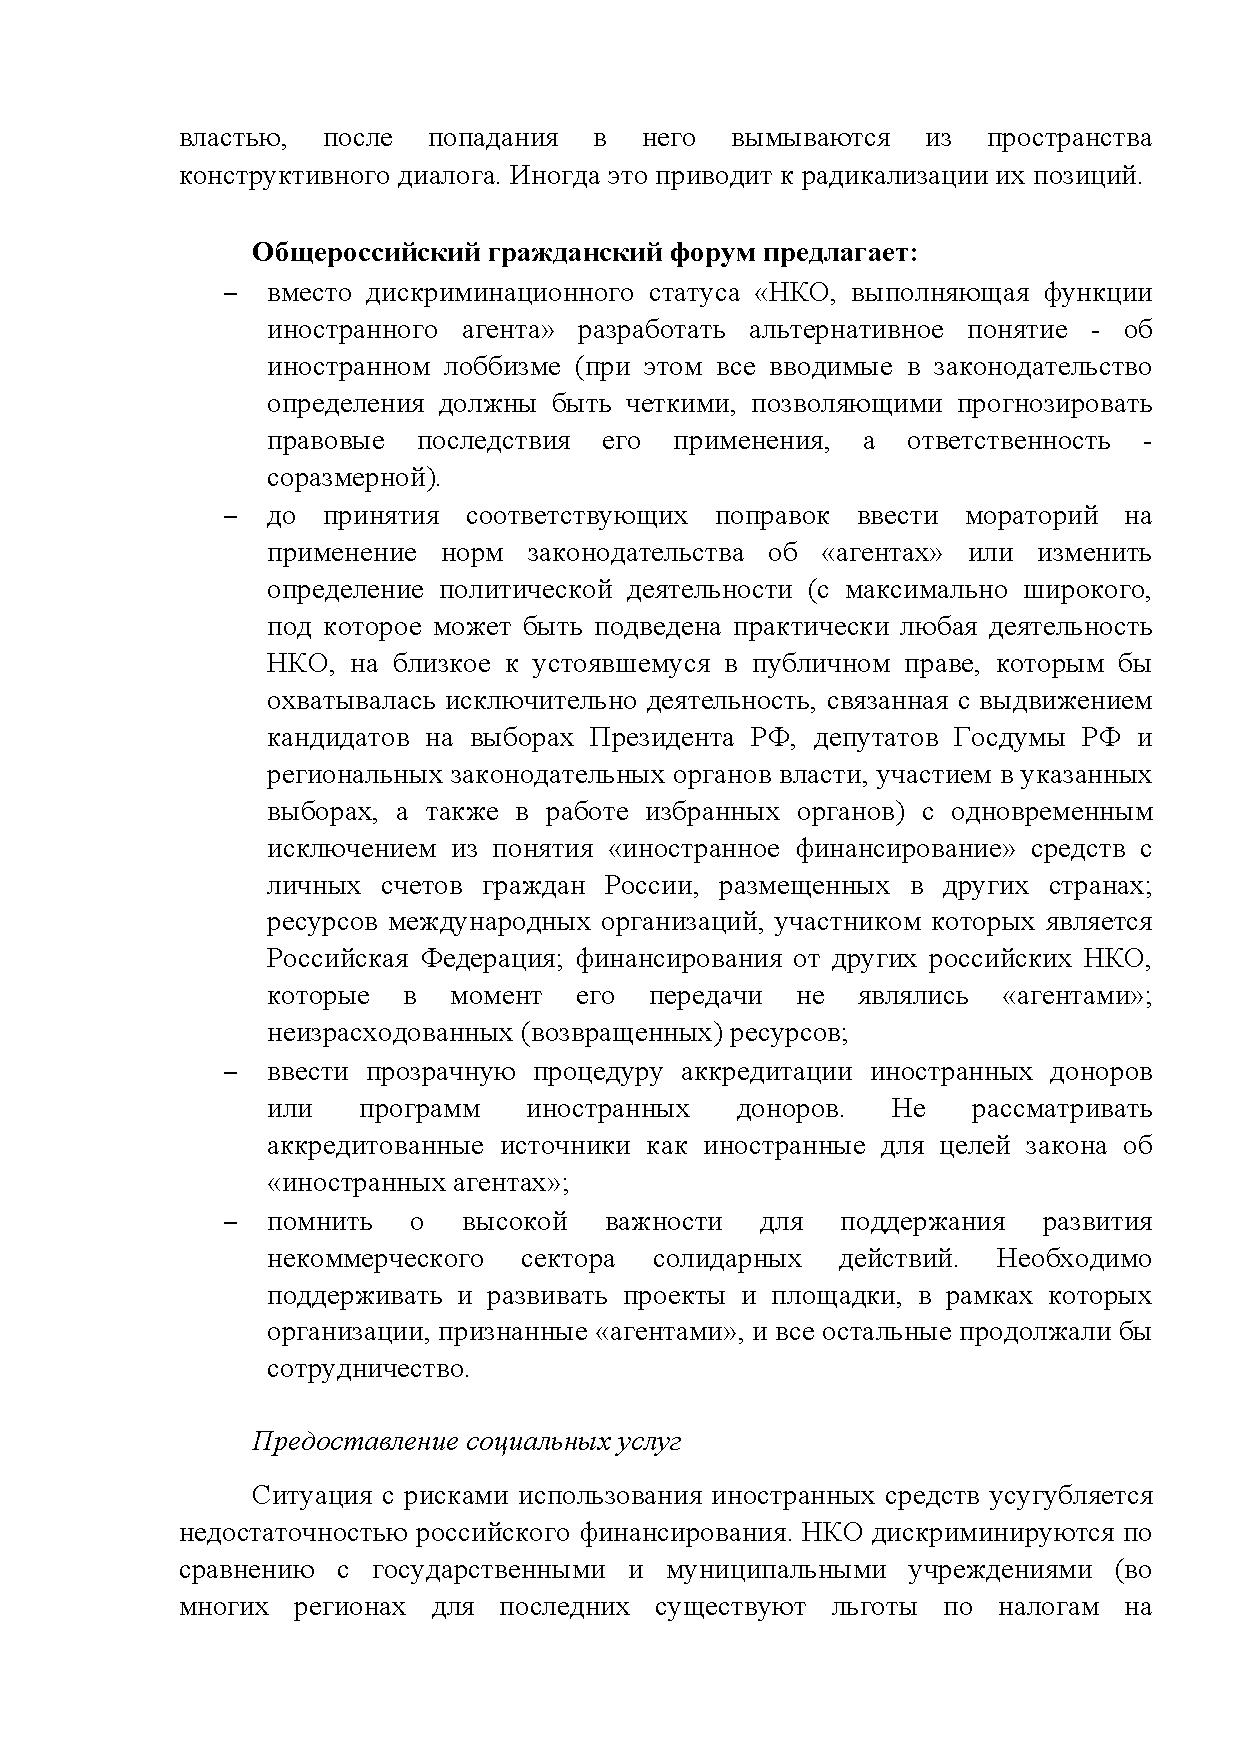  Опубликованы Предложения Общероссийского гражданского форума 2015 - фото 5